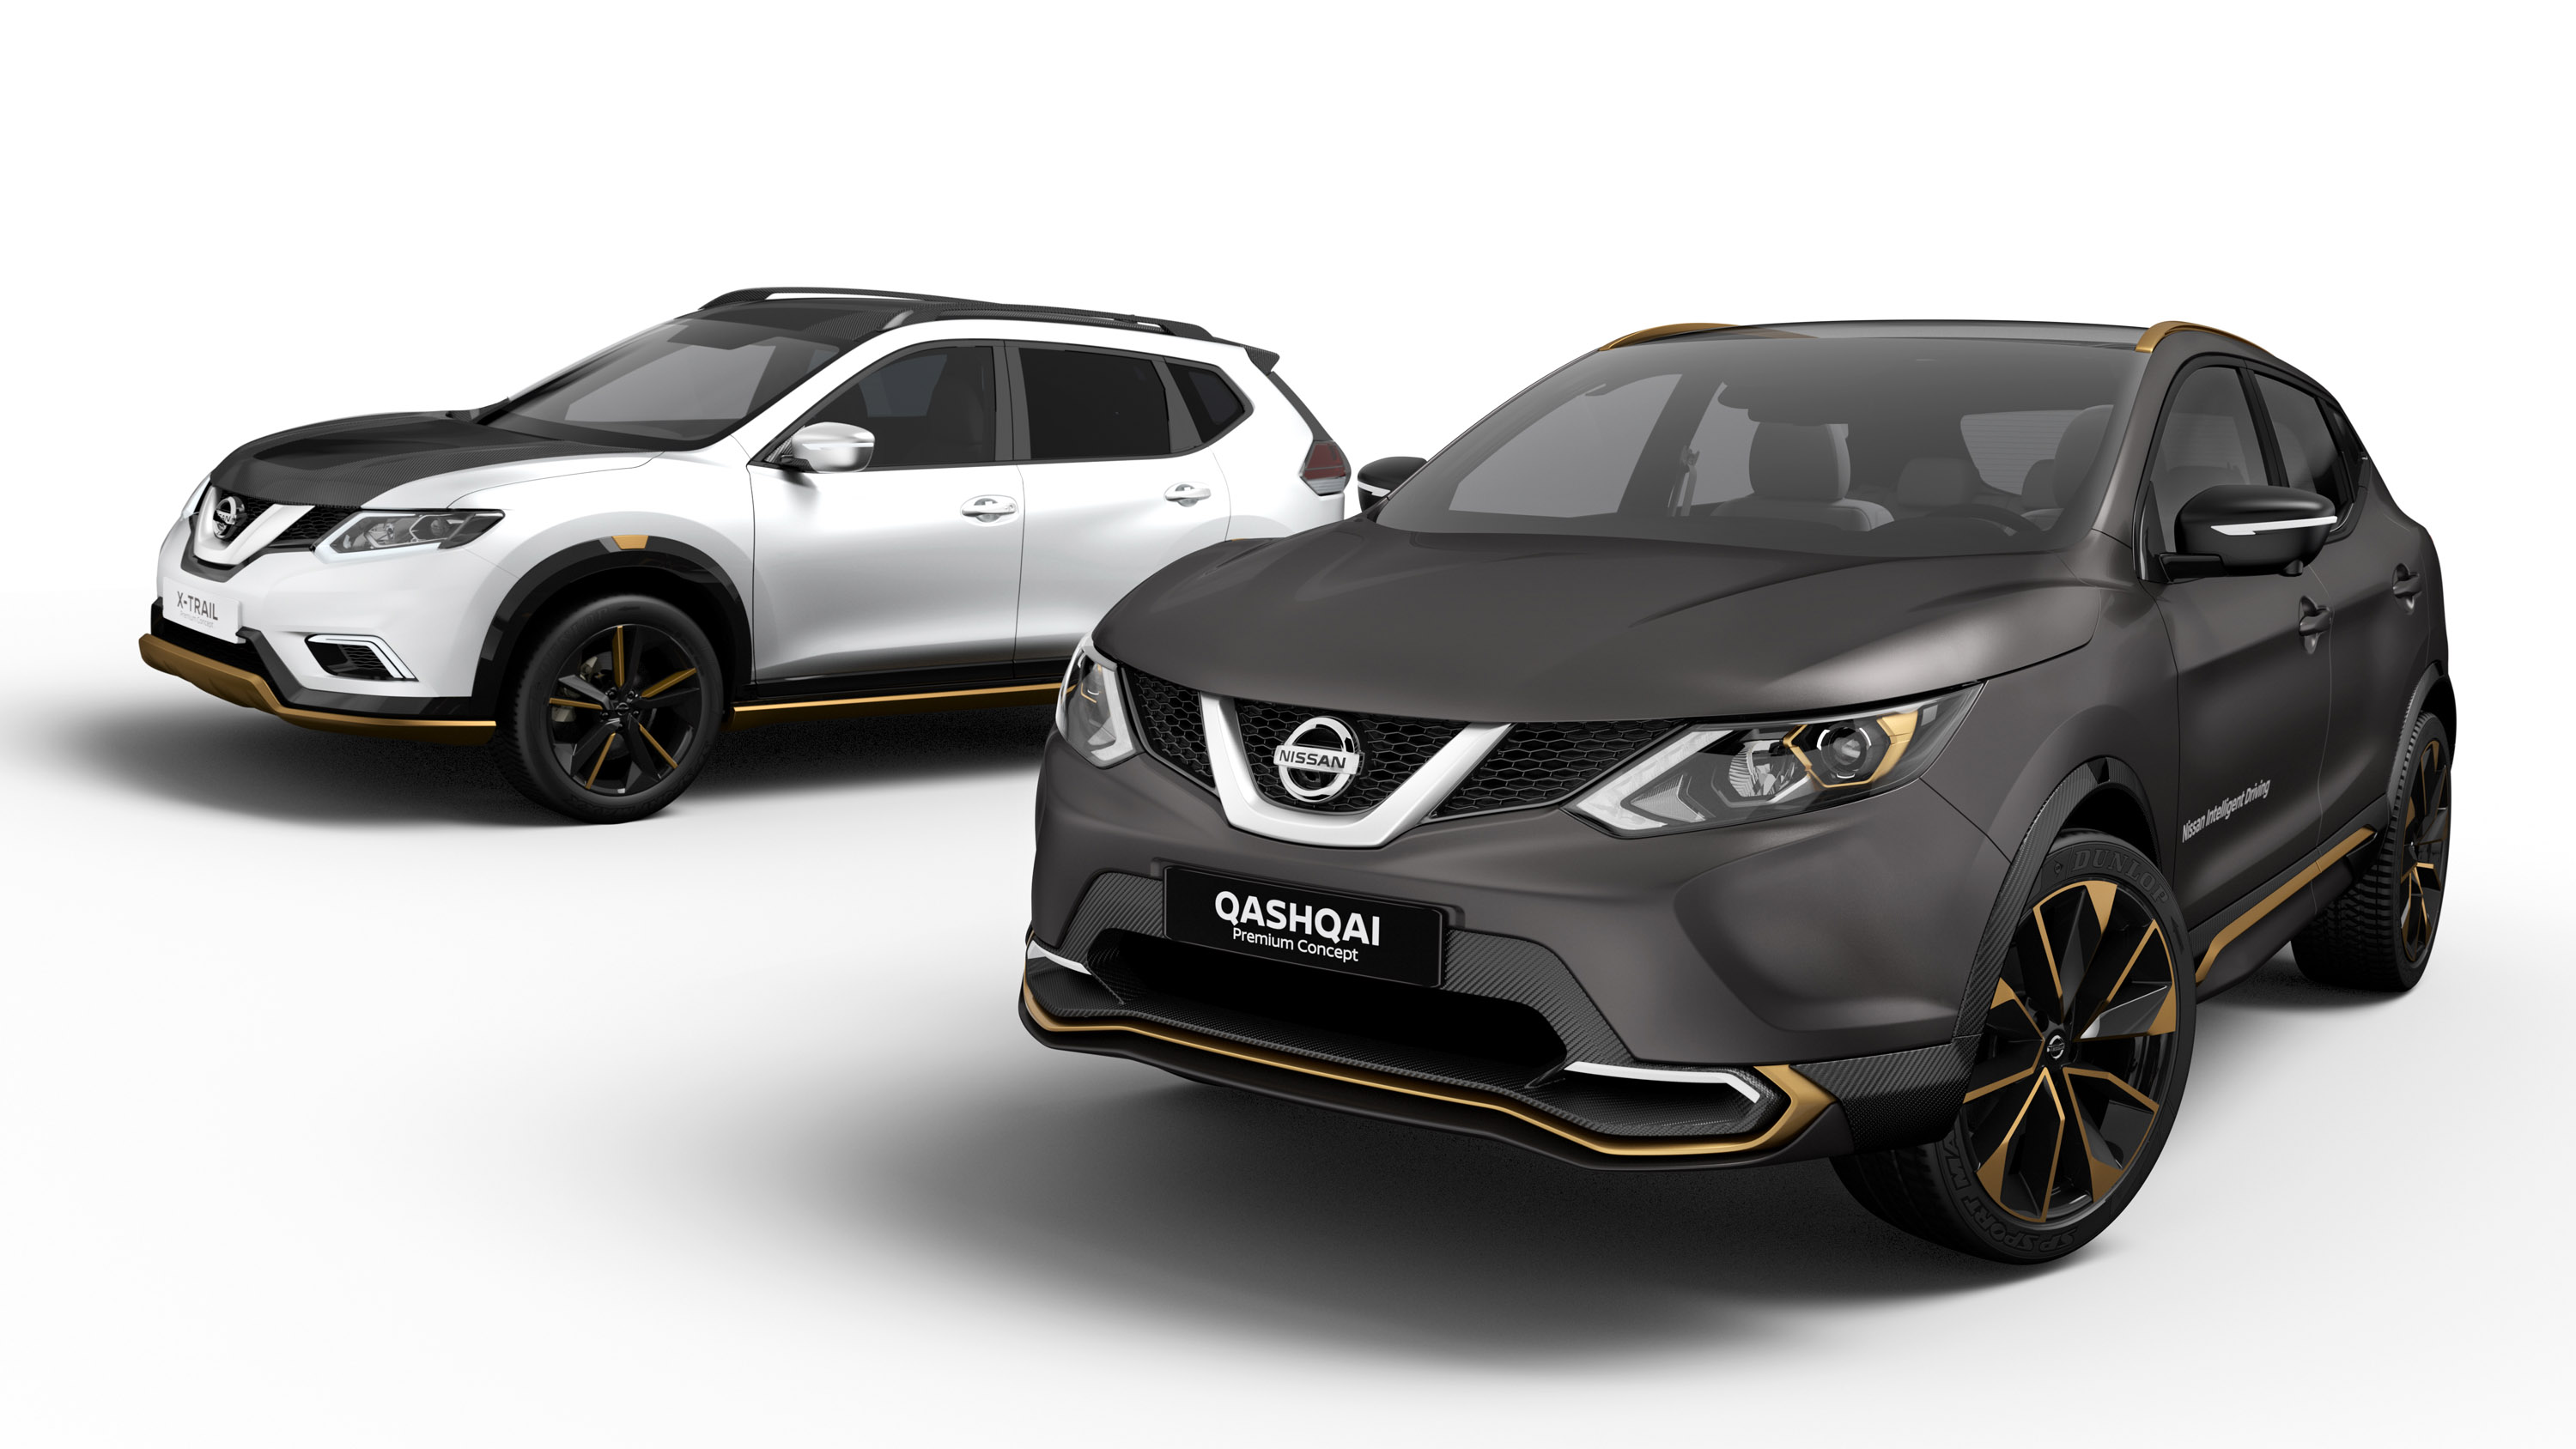 Nissan Qashqai Premium Concept